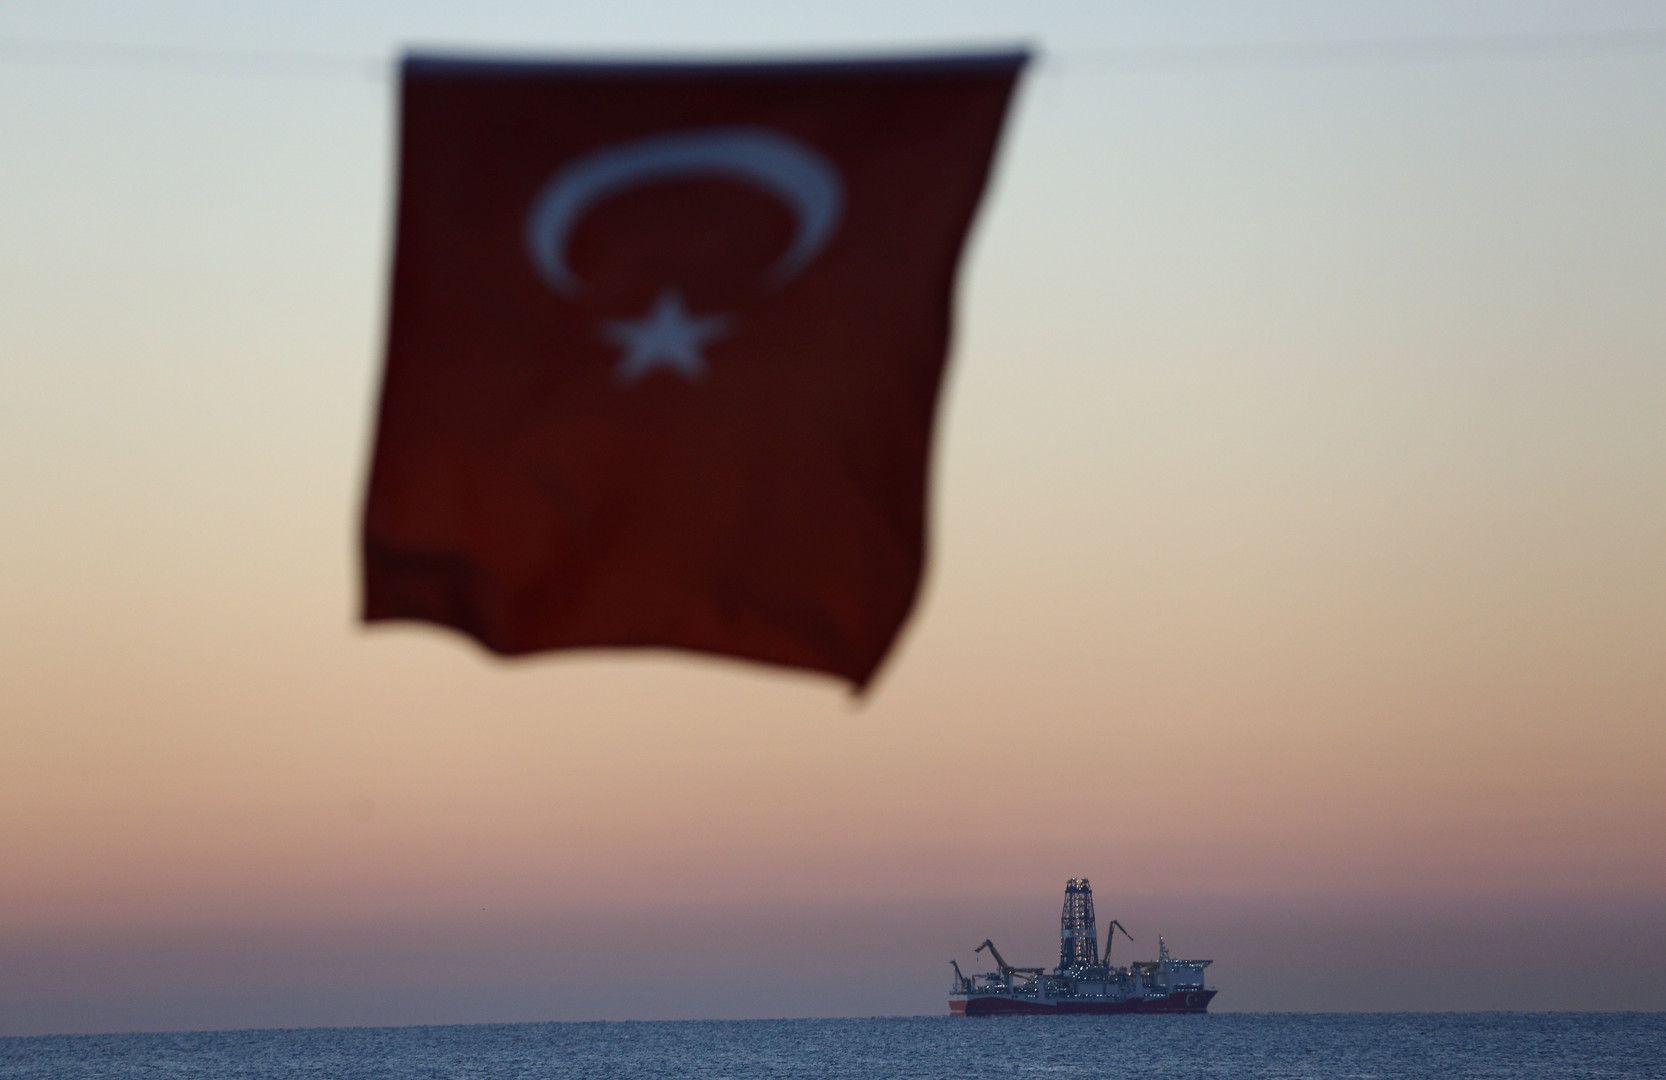 سياسة تركيا  شرق المتوسط  من منظور قوانين الملاحة البحرية الدولية